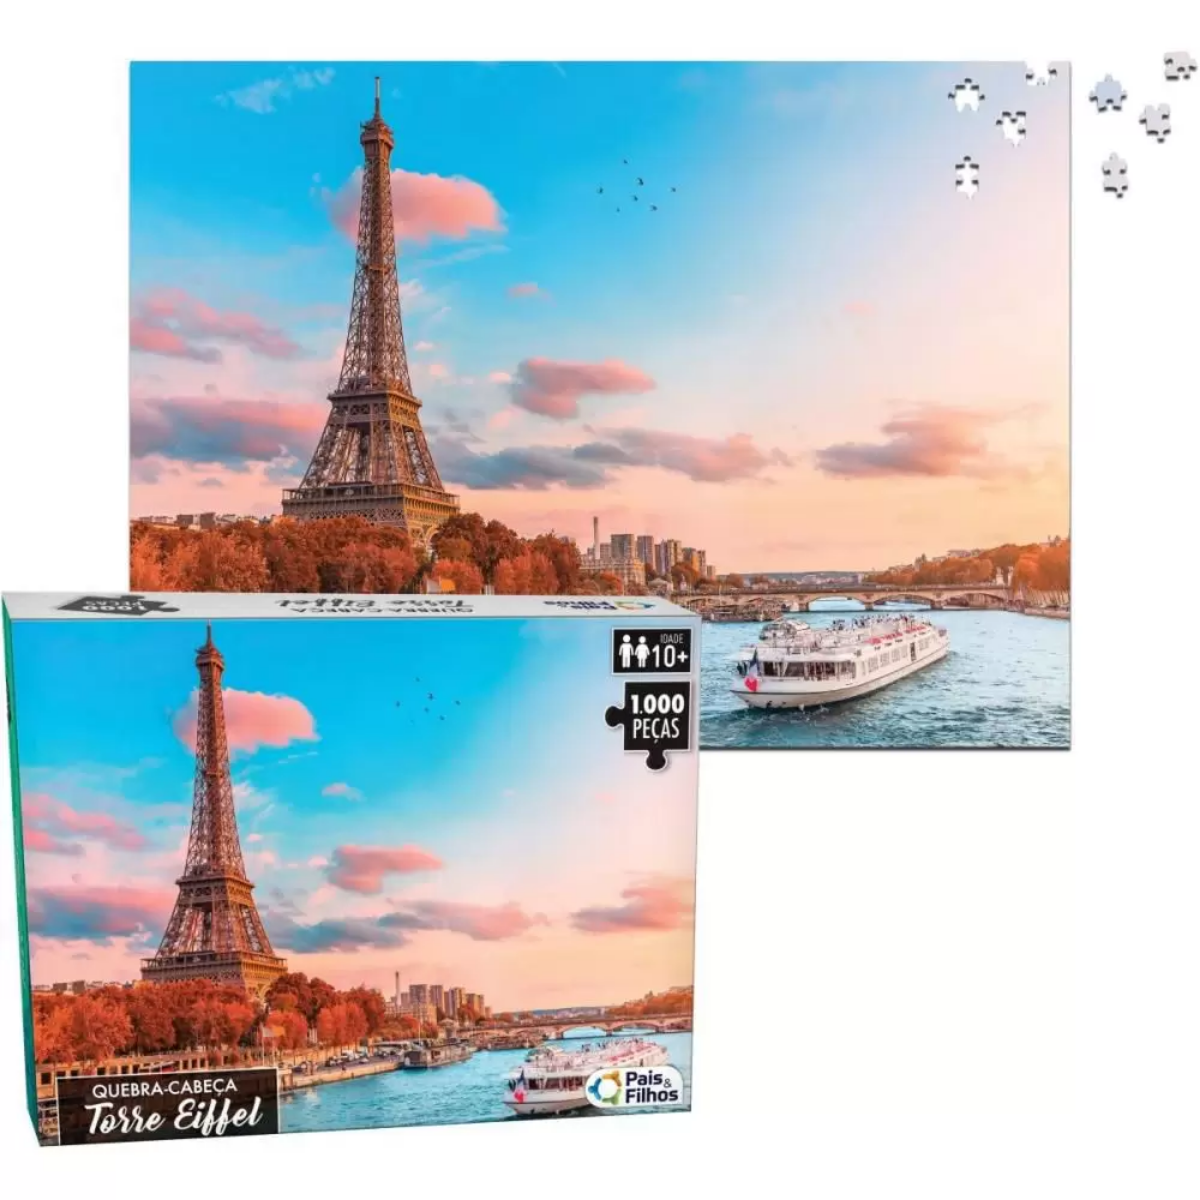 Quebra Cabeça de 1000 peças brinquedo cartonado Torre Eiffel Paris 63cm x 45,5cmm - 1